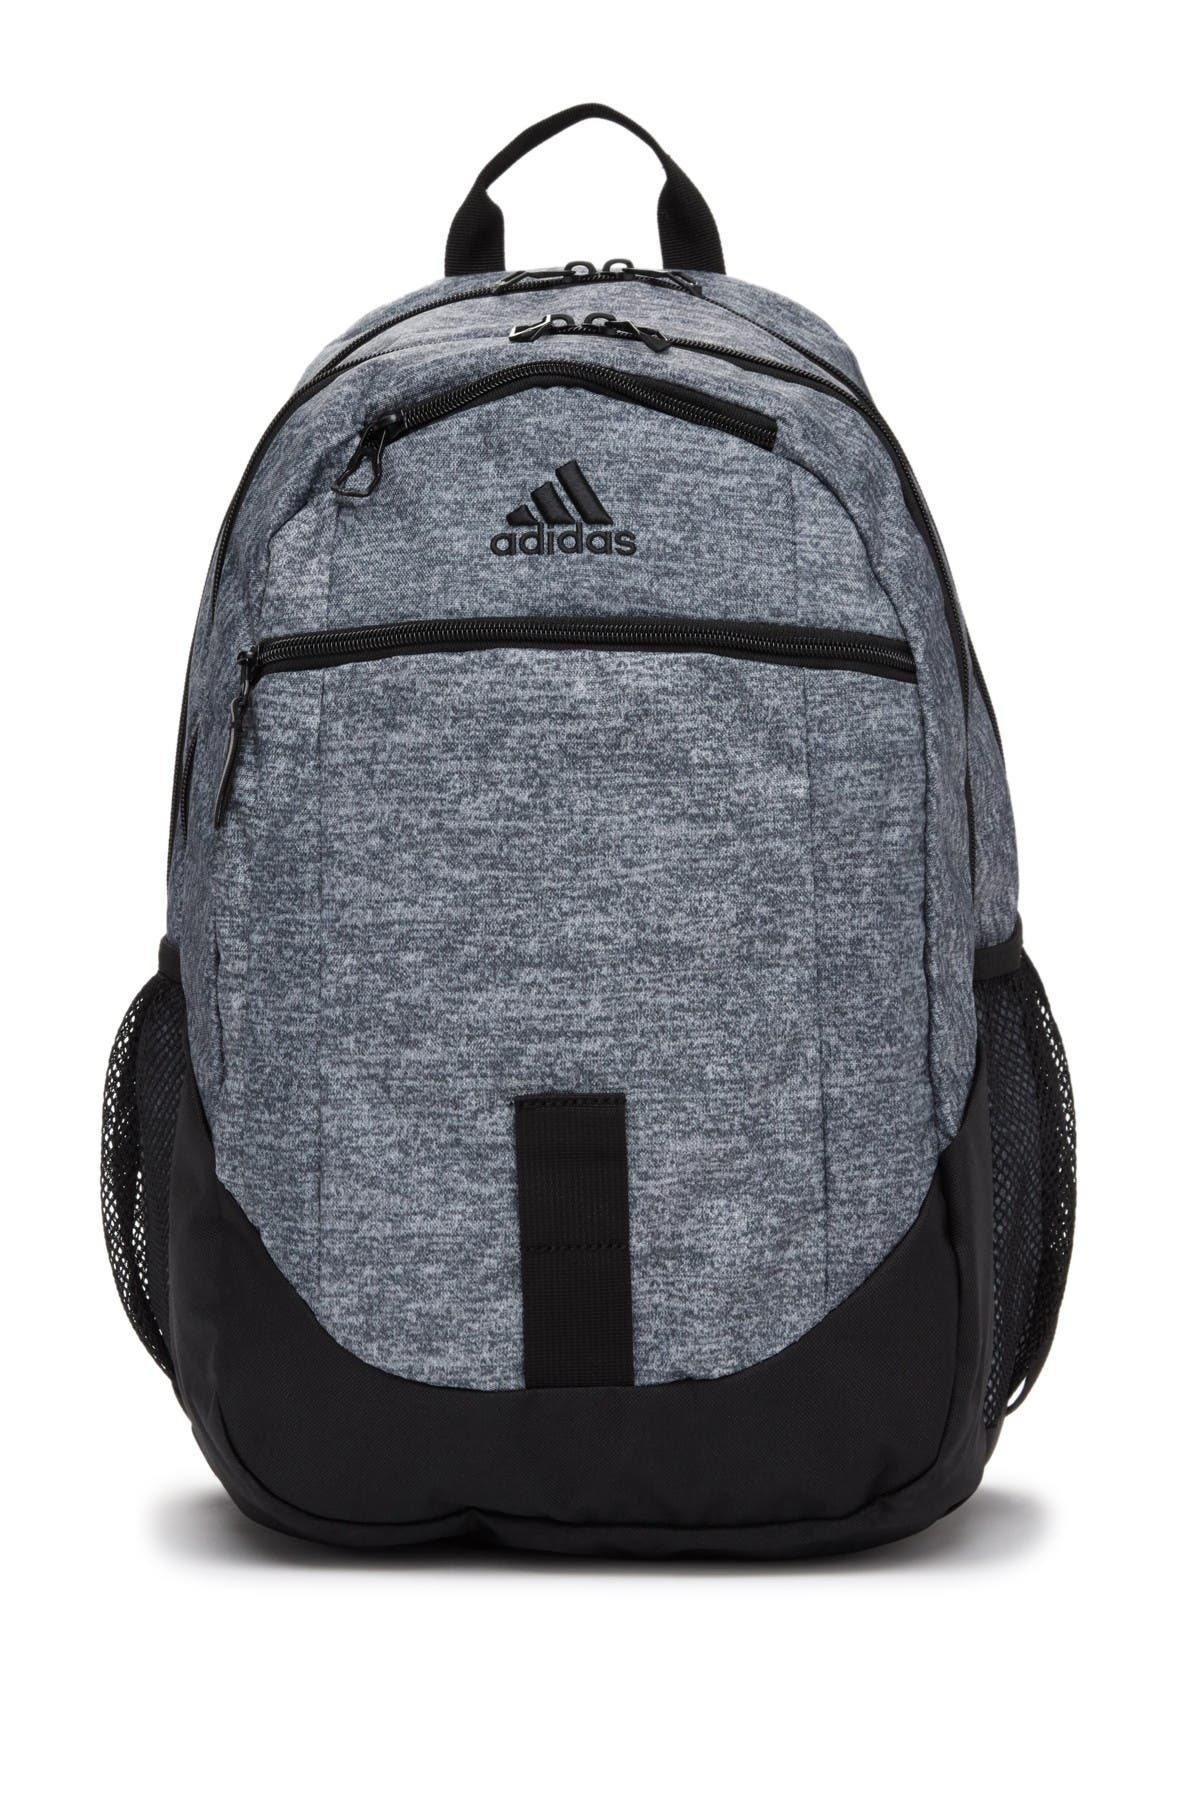 adidas foundation iv backpack